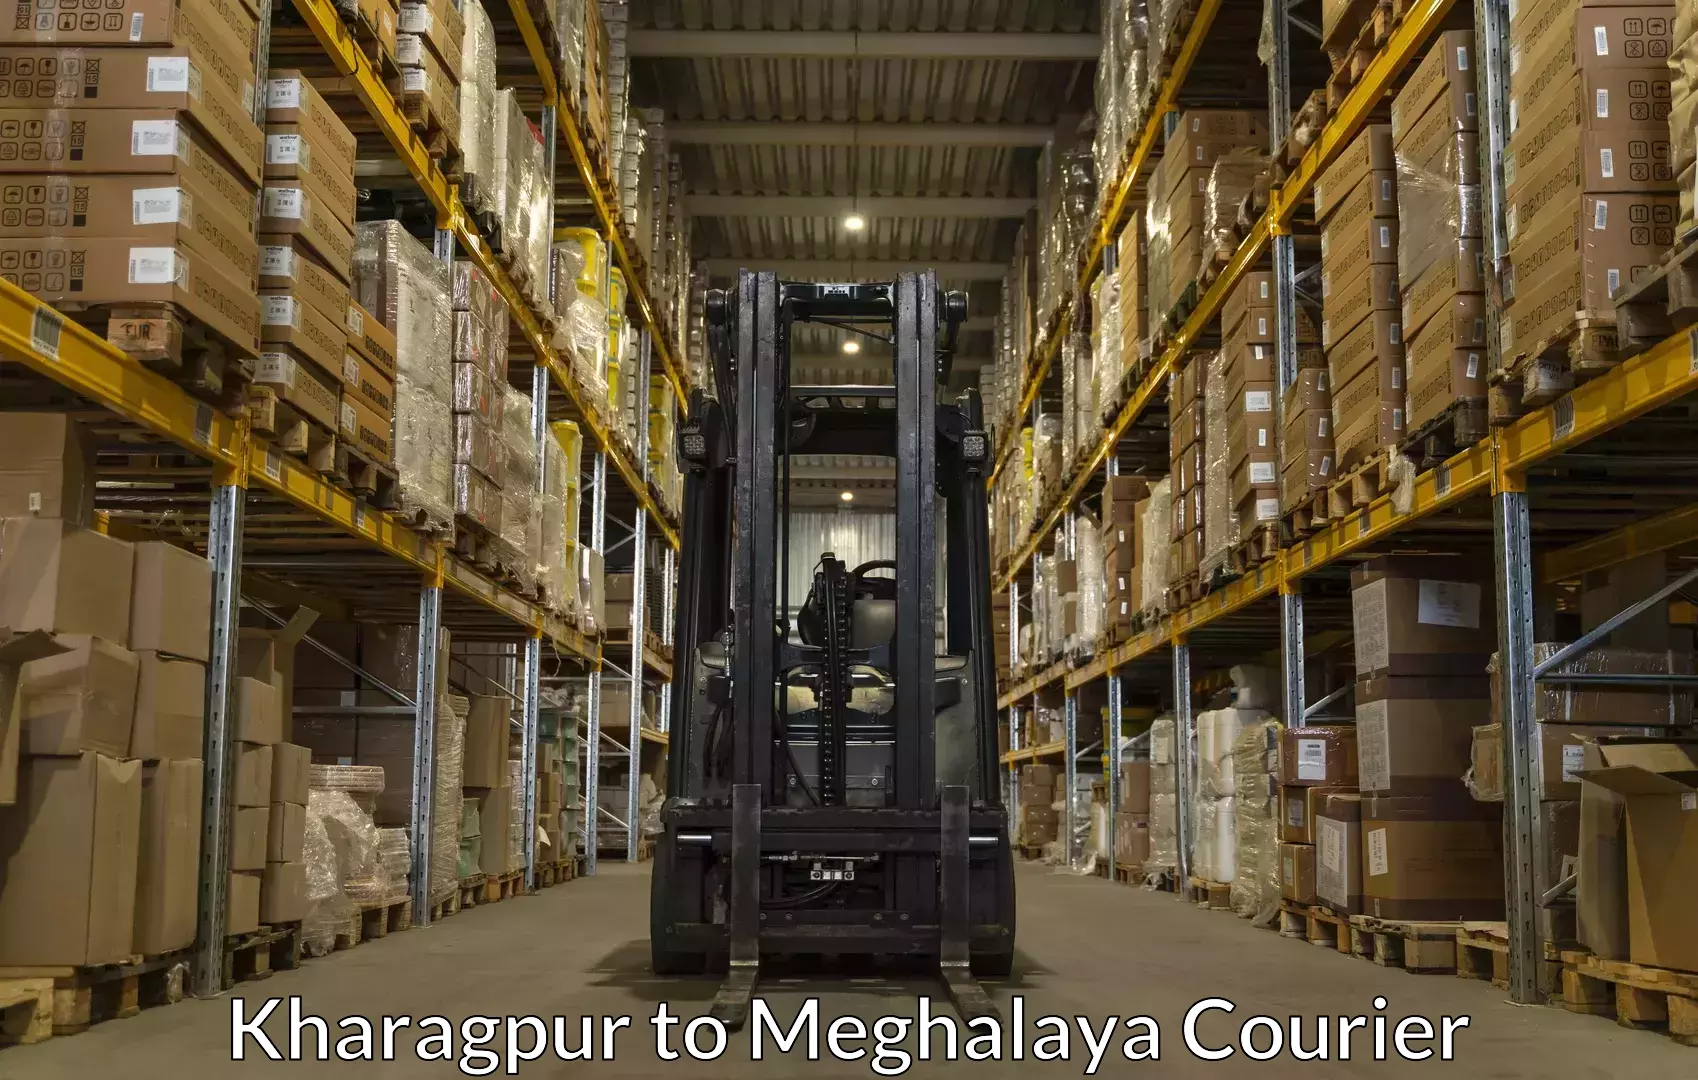 Luggage transit service Kharagpur to Meghalaya